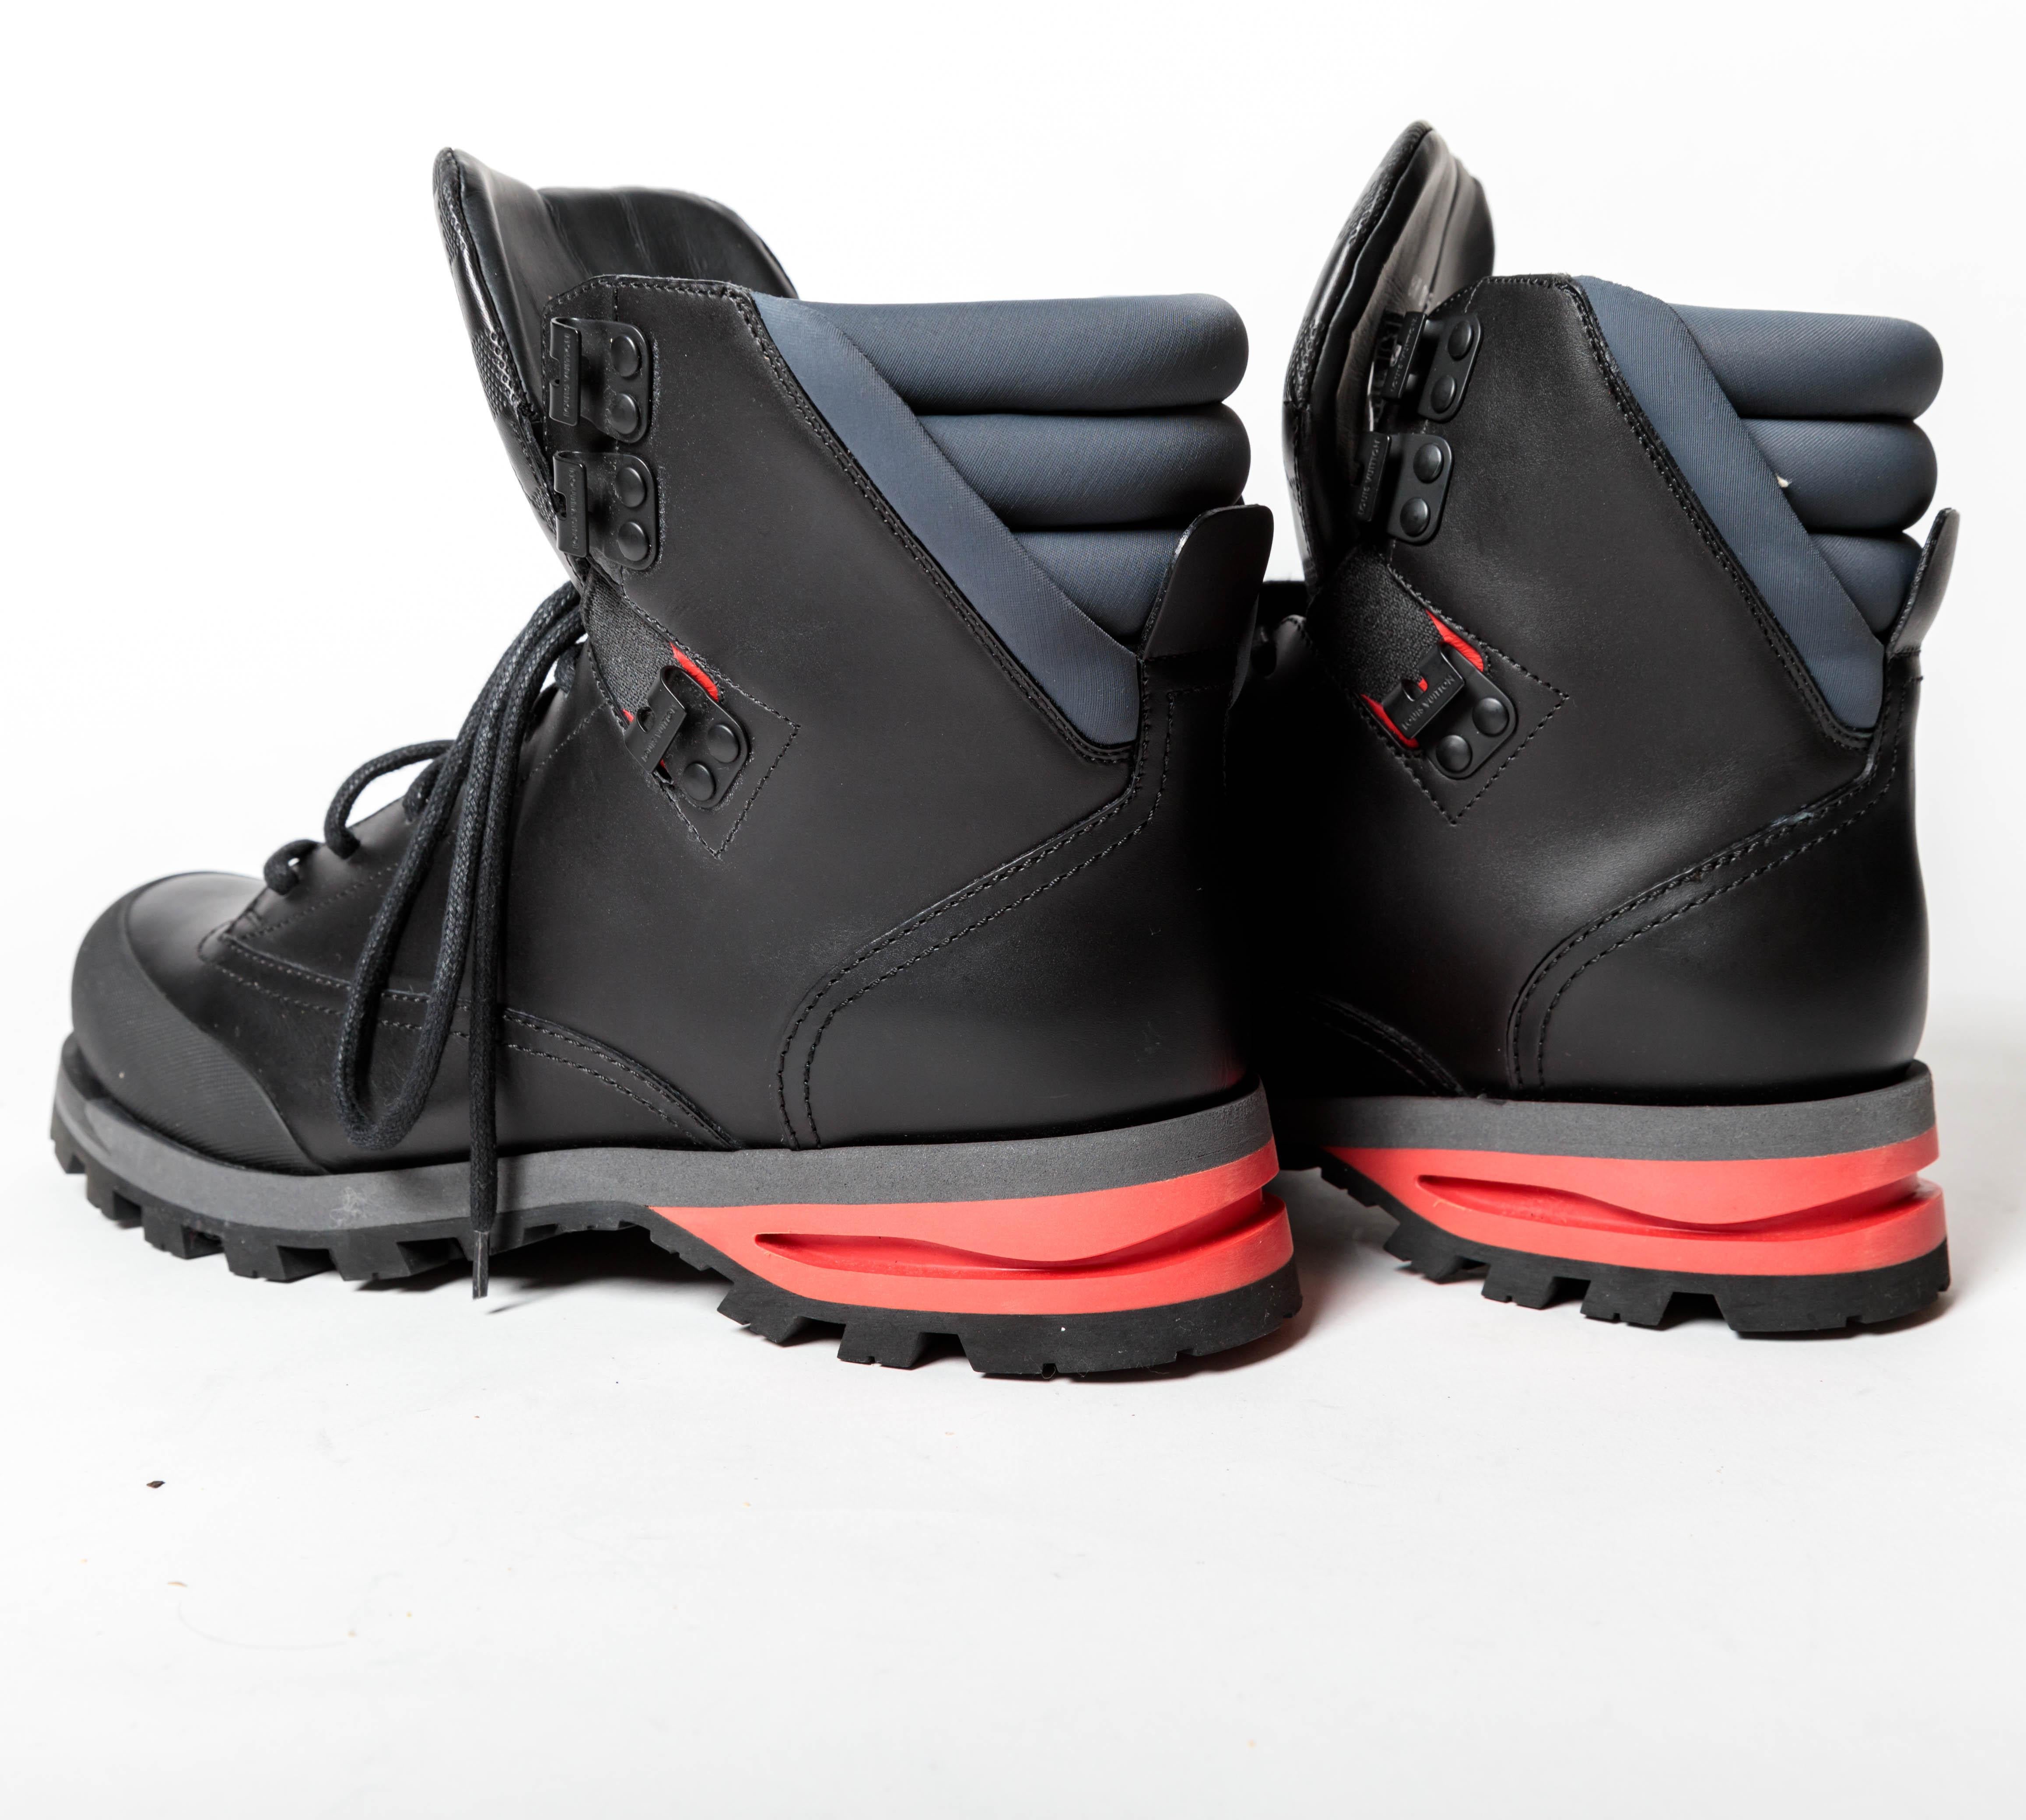 Men's Louis Vuitton Mens Calfskin Damier Blizzard Ankle Boots in Black - Size 8.5